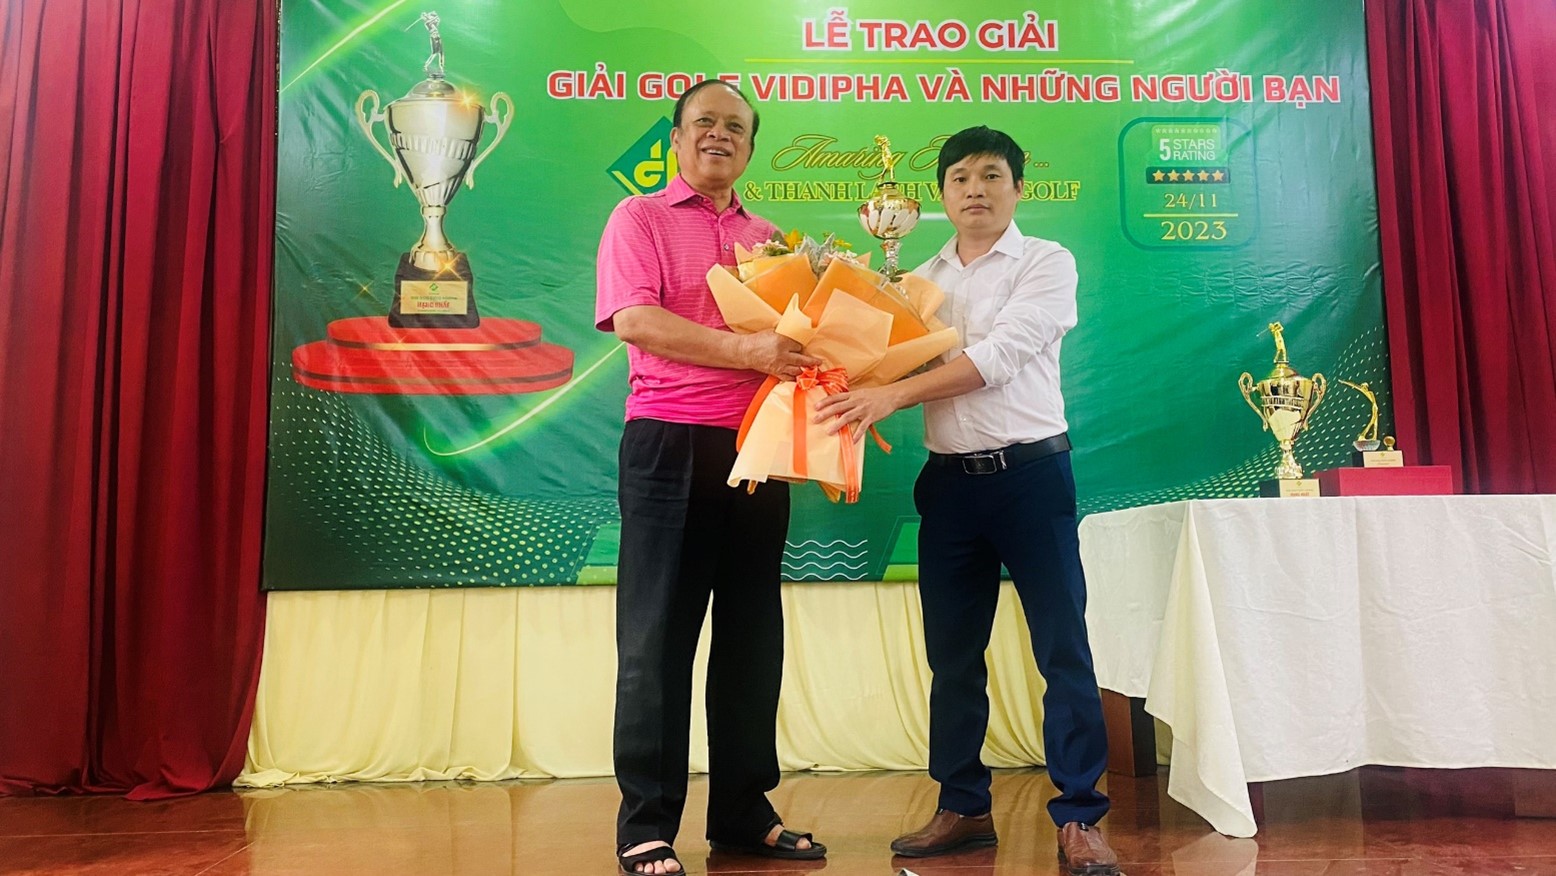 Phó Giám đốc VIDIPHA Hà Nội trao Cúp cho Golfer giải nhì